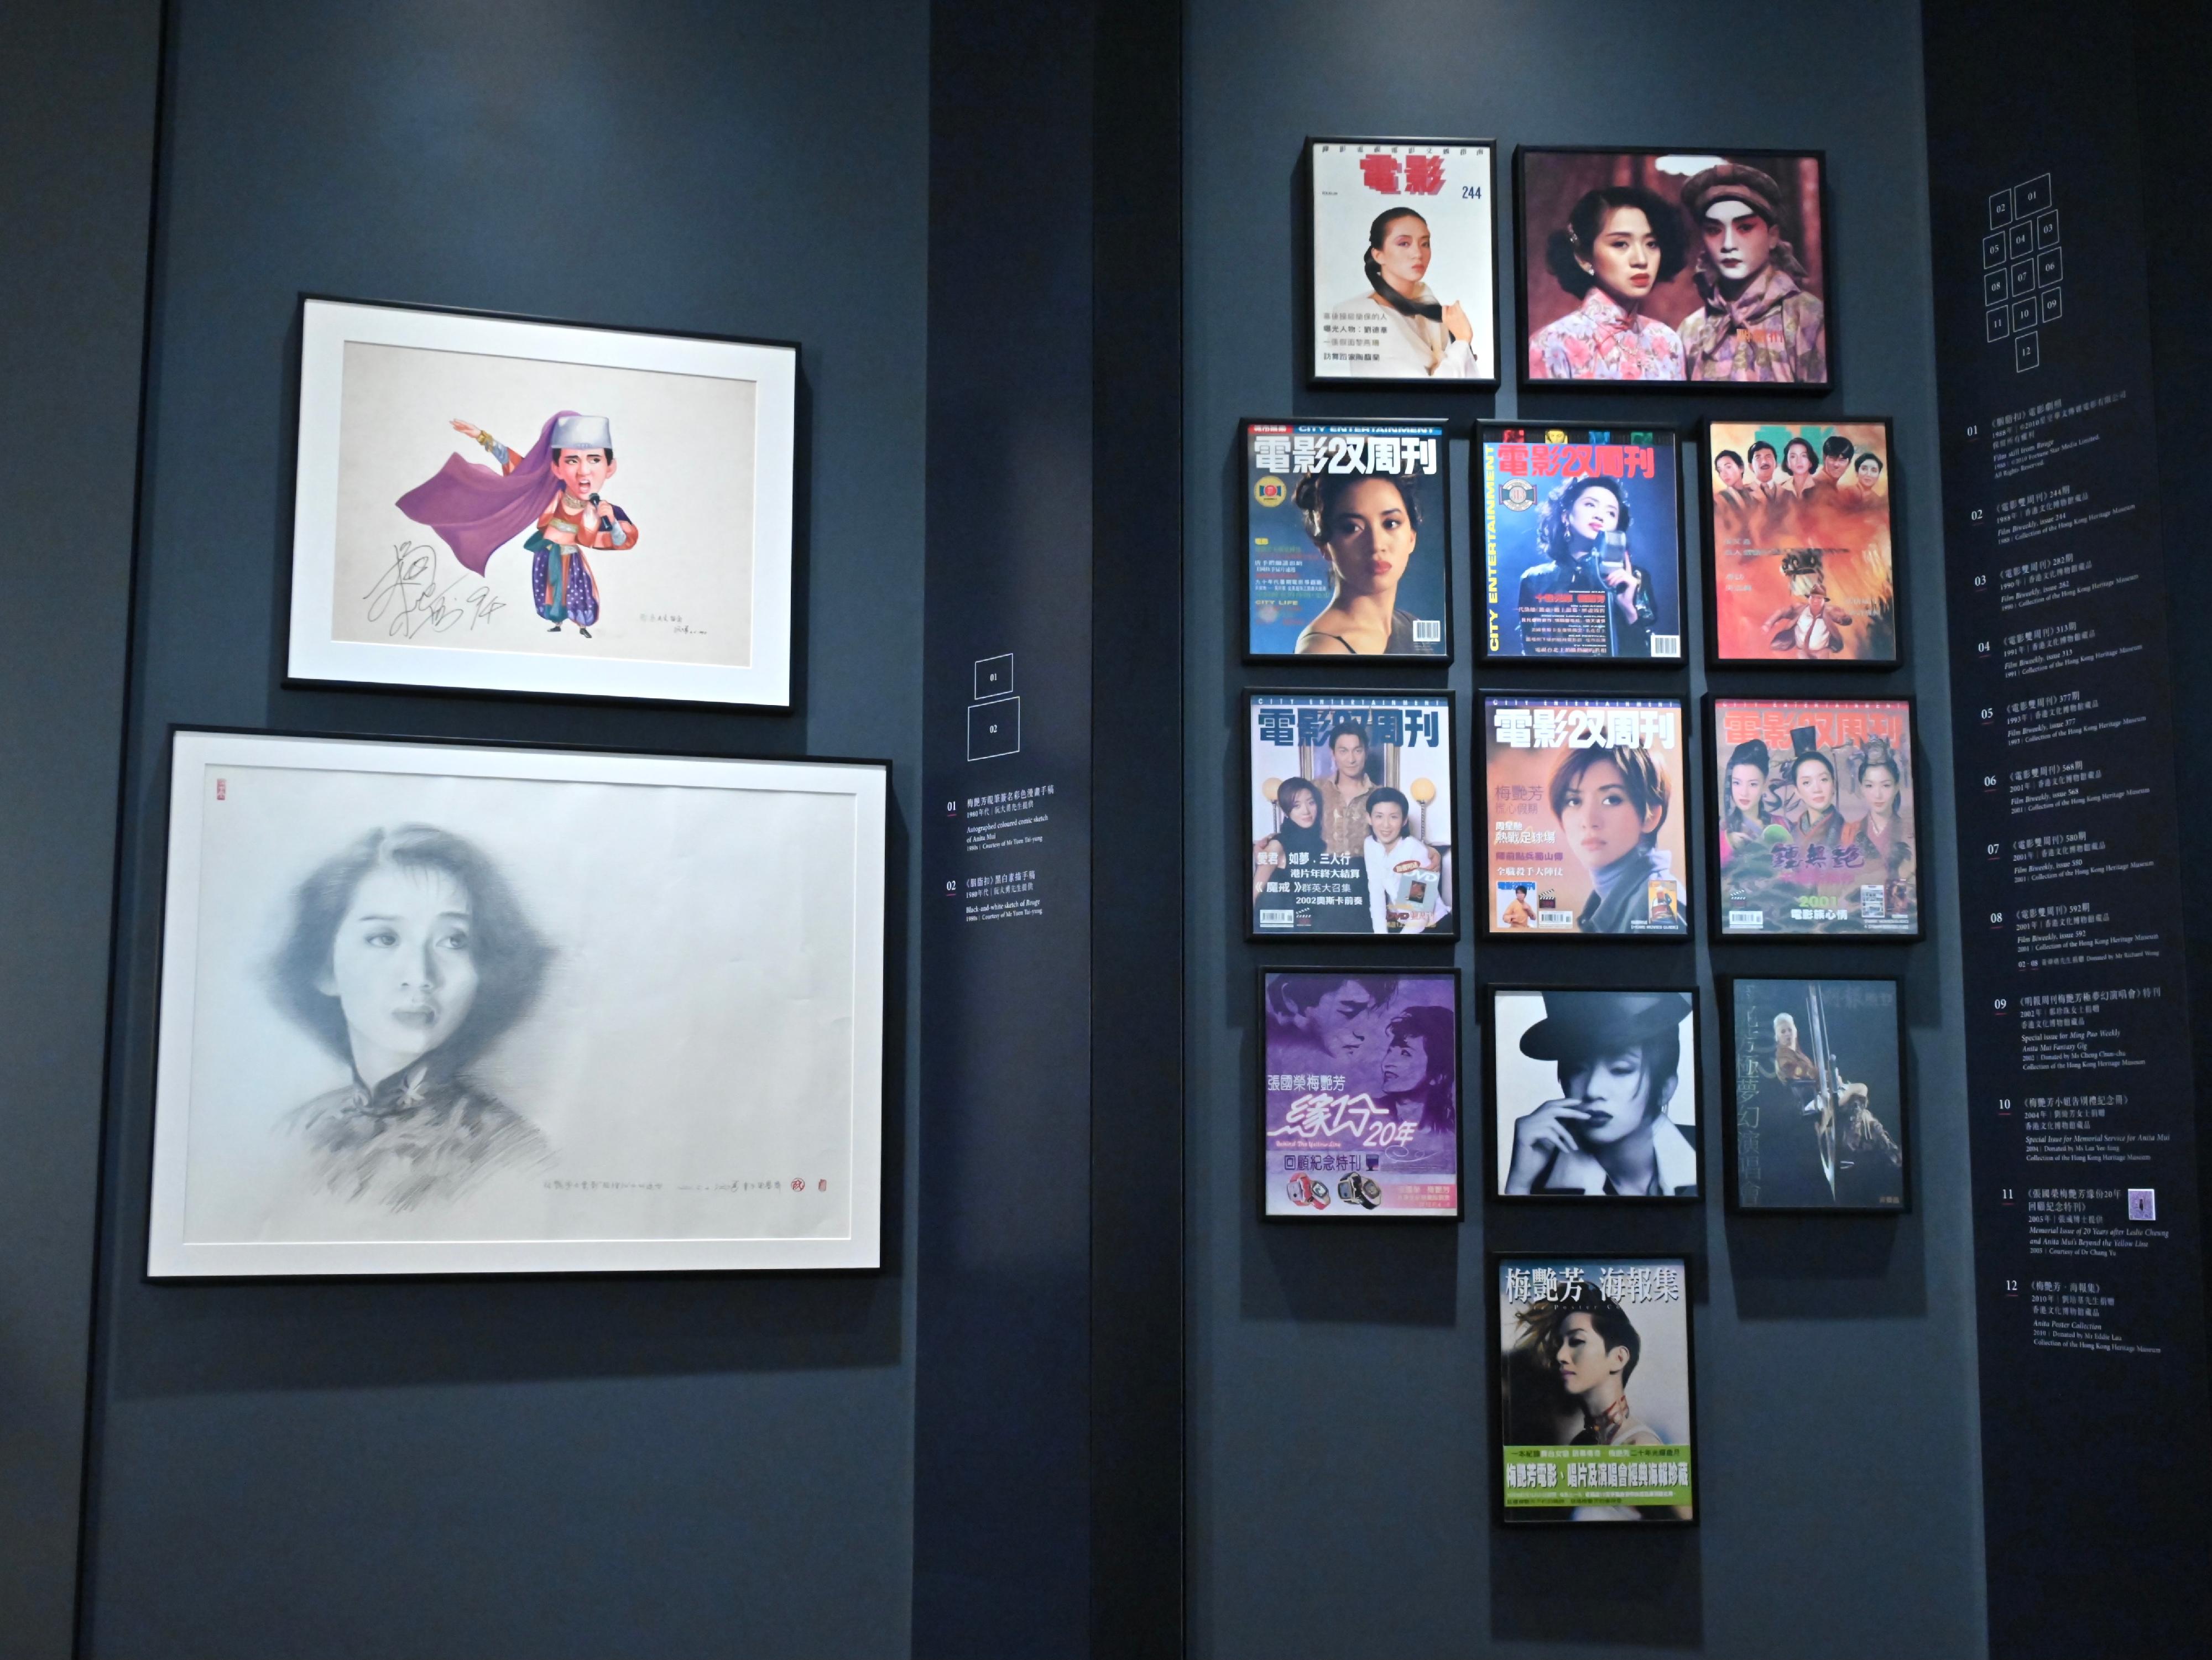 「绝代芳华・梅艳芳」展览开幕典礼今日（十二月二十三日）在香港文化博物馆举行。图示梅艳芳相关的流行文化产物，包括漫画、杂志封面及素描手稿等。